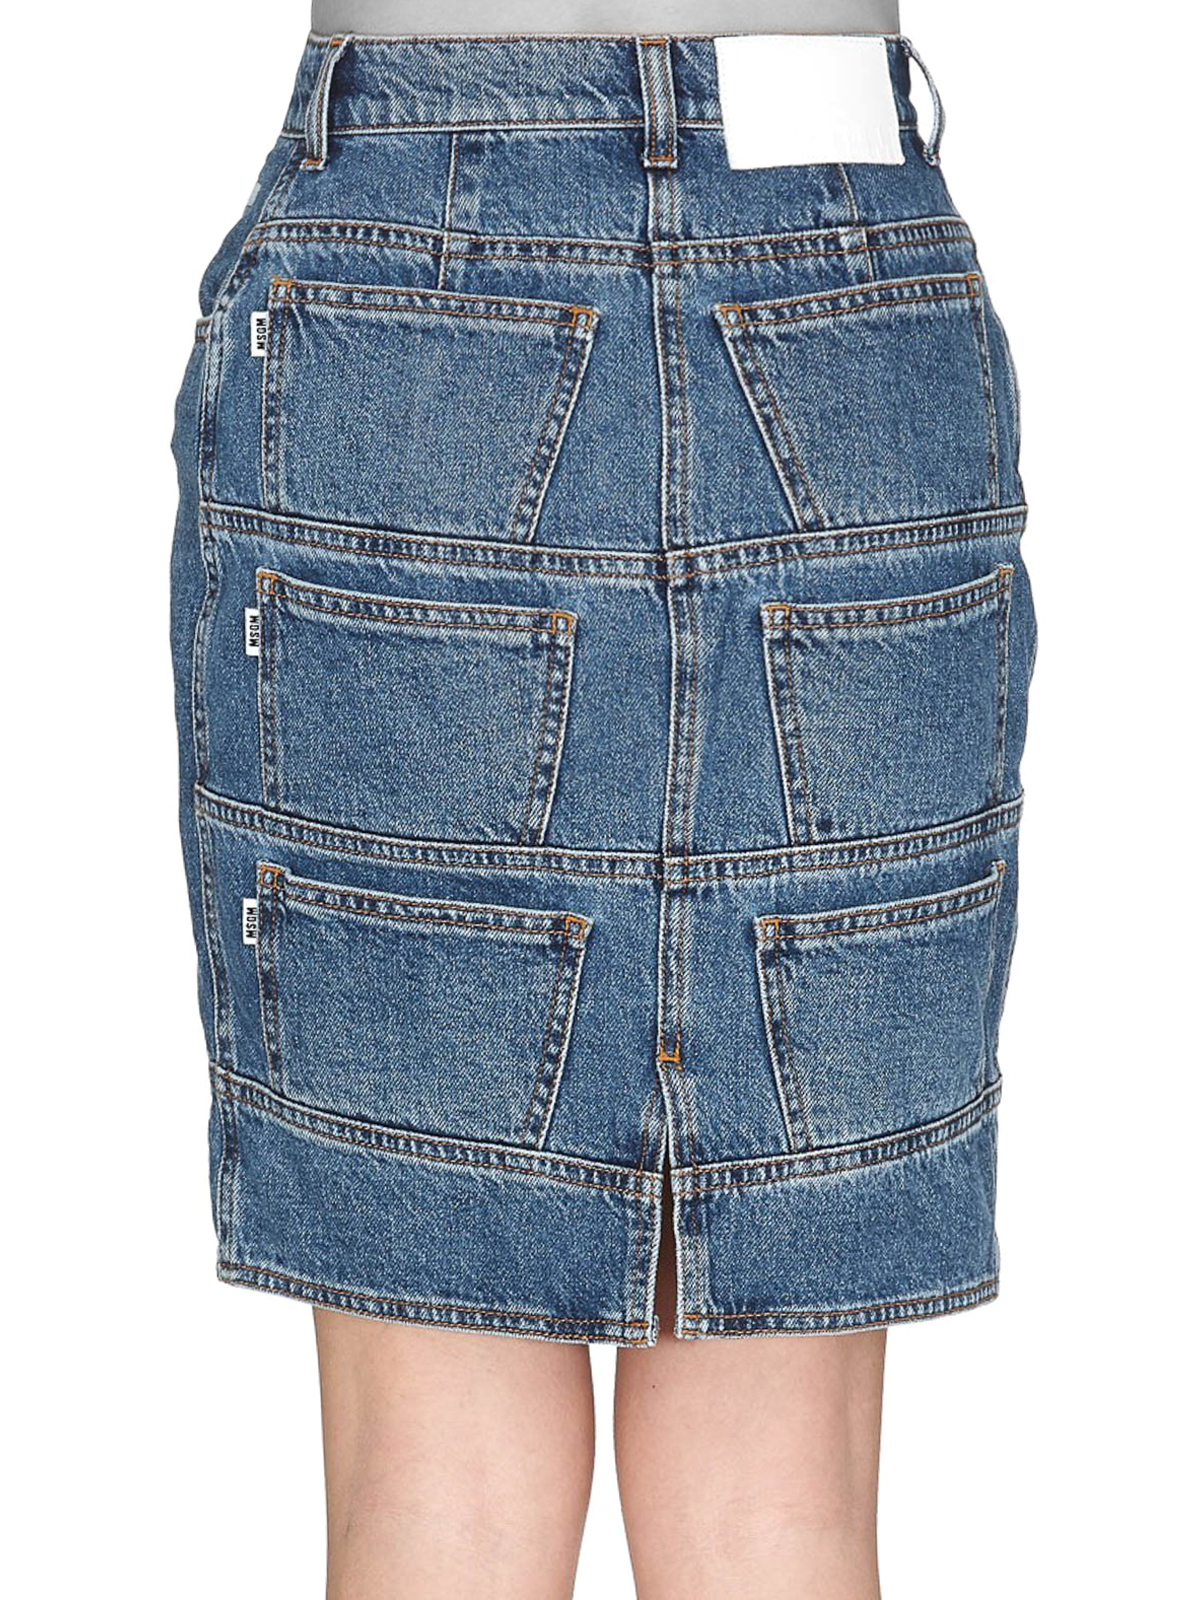 denim skirt knee length online